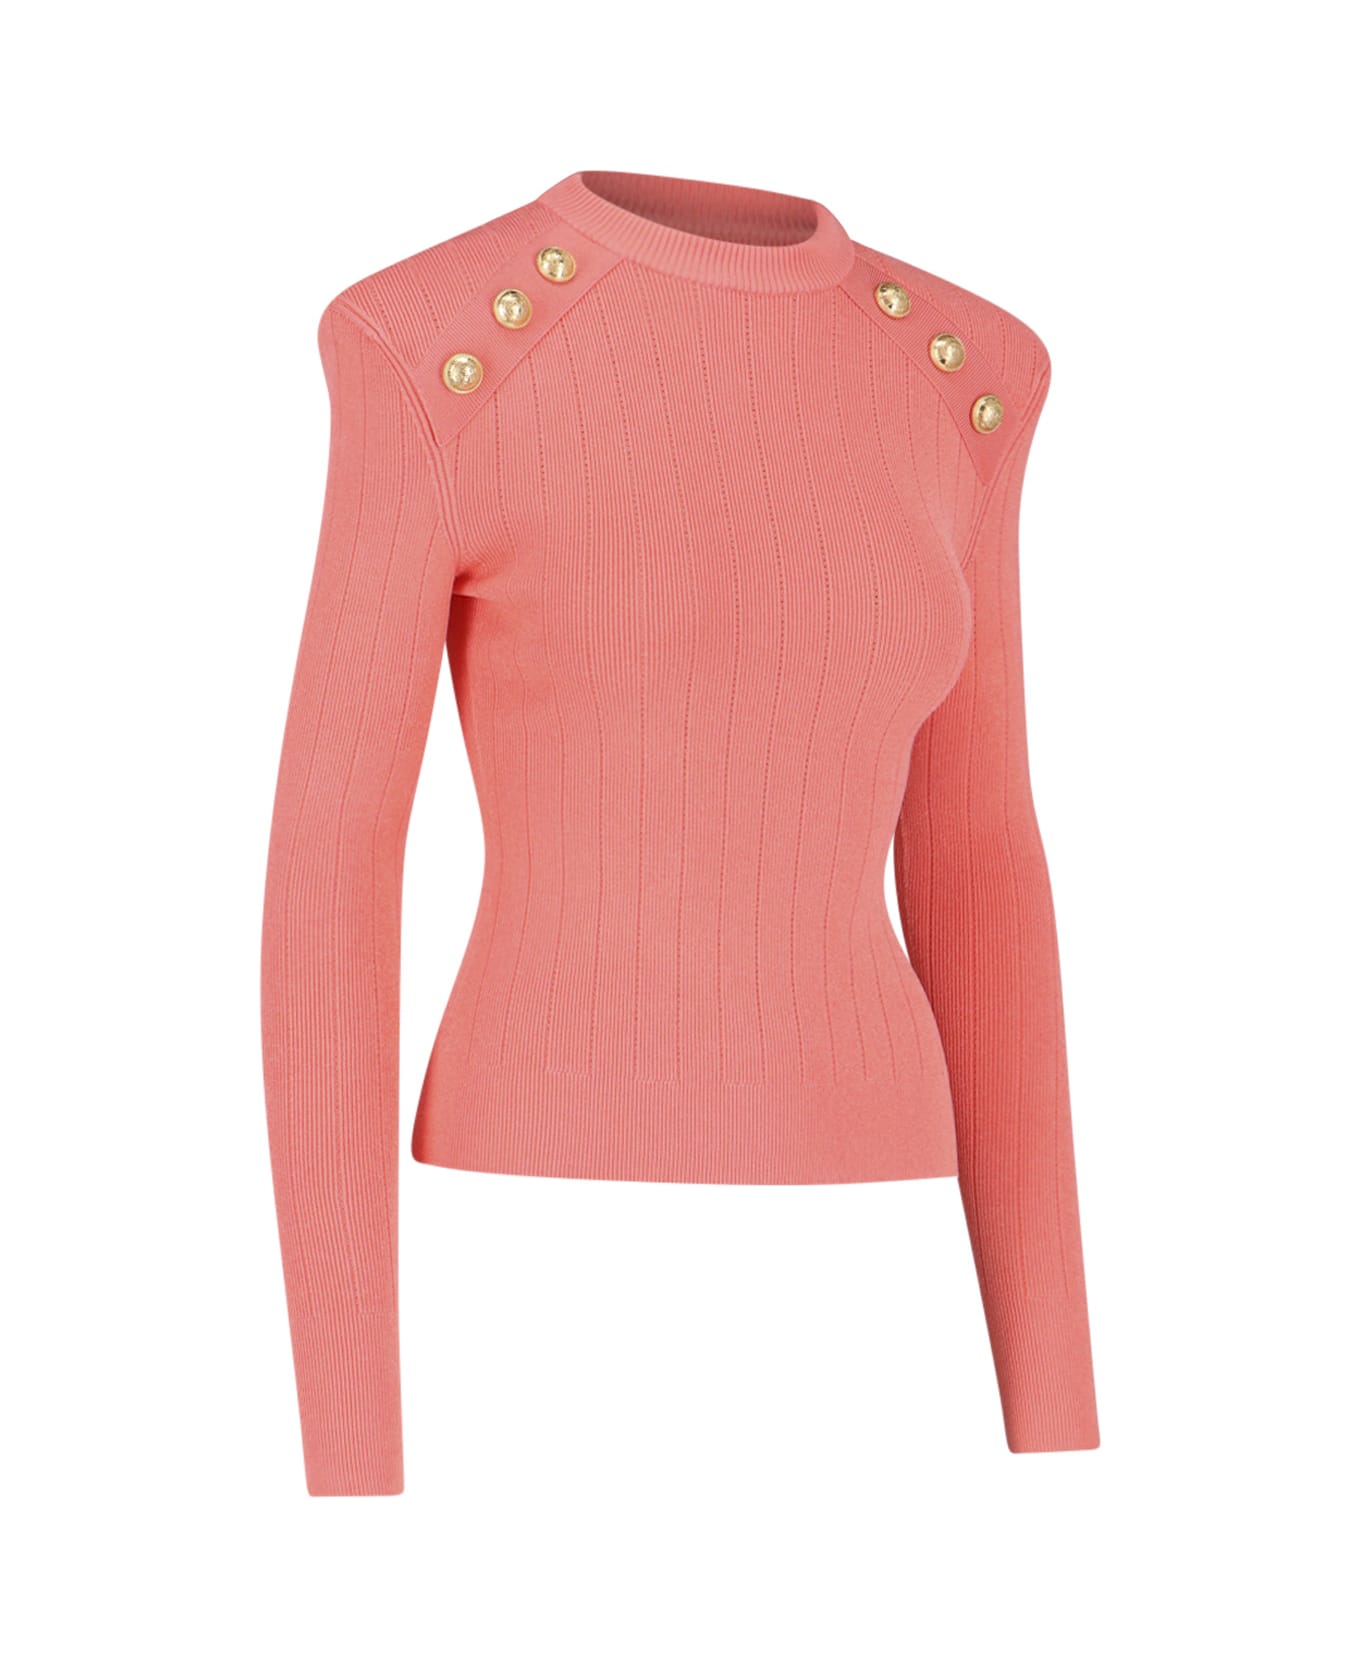 Balmain Gold Button Sweater - Pink